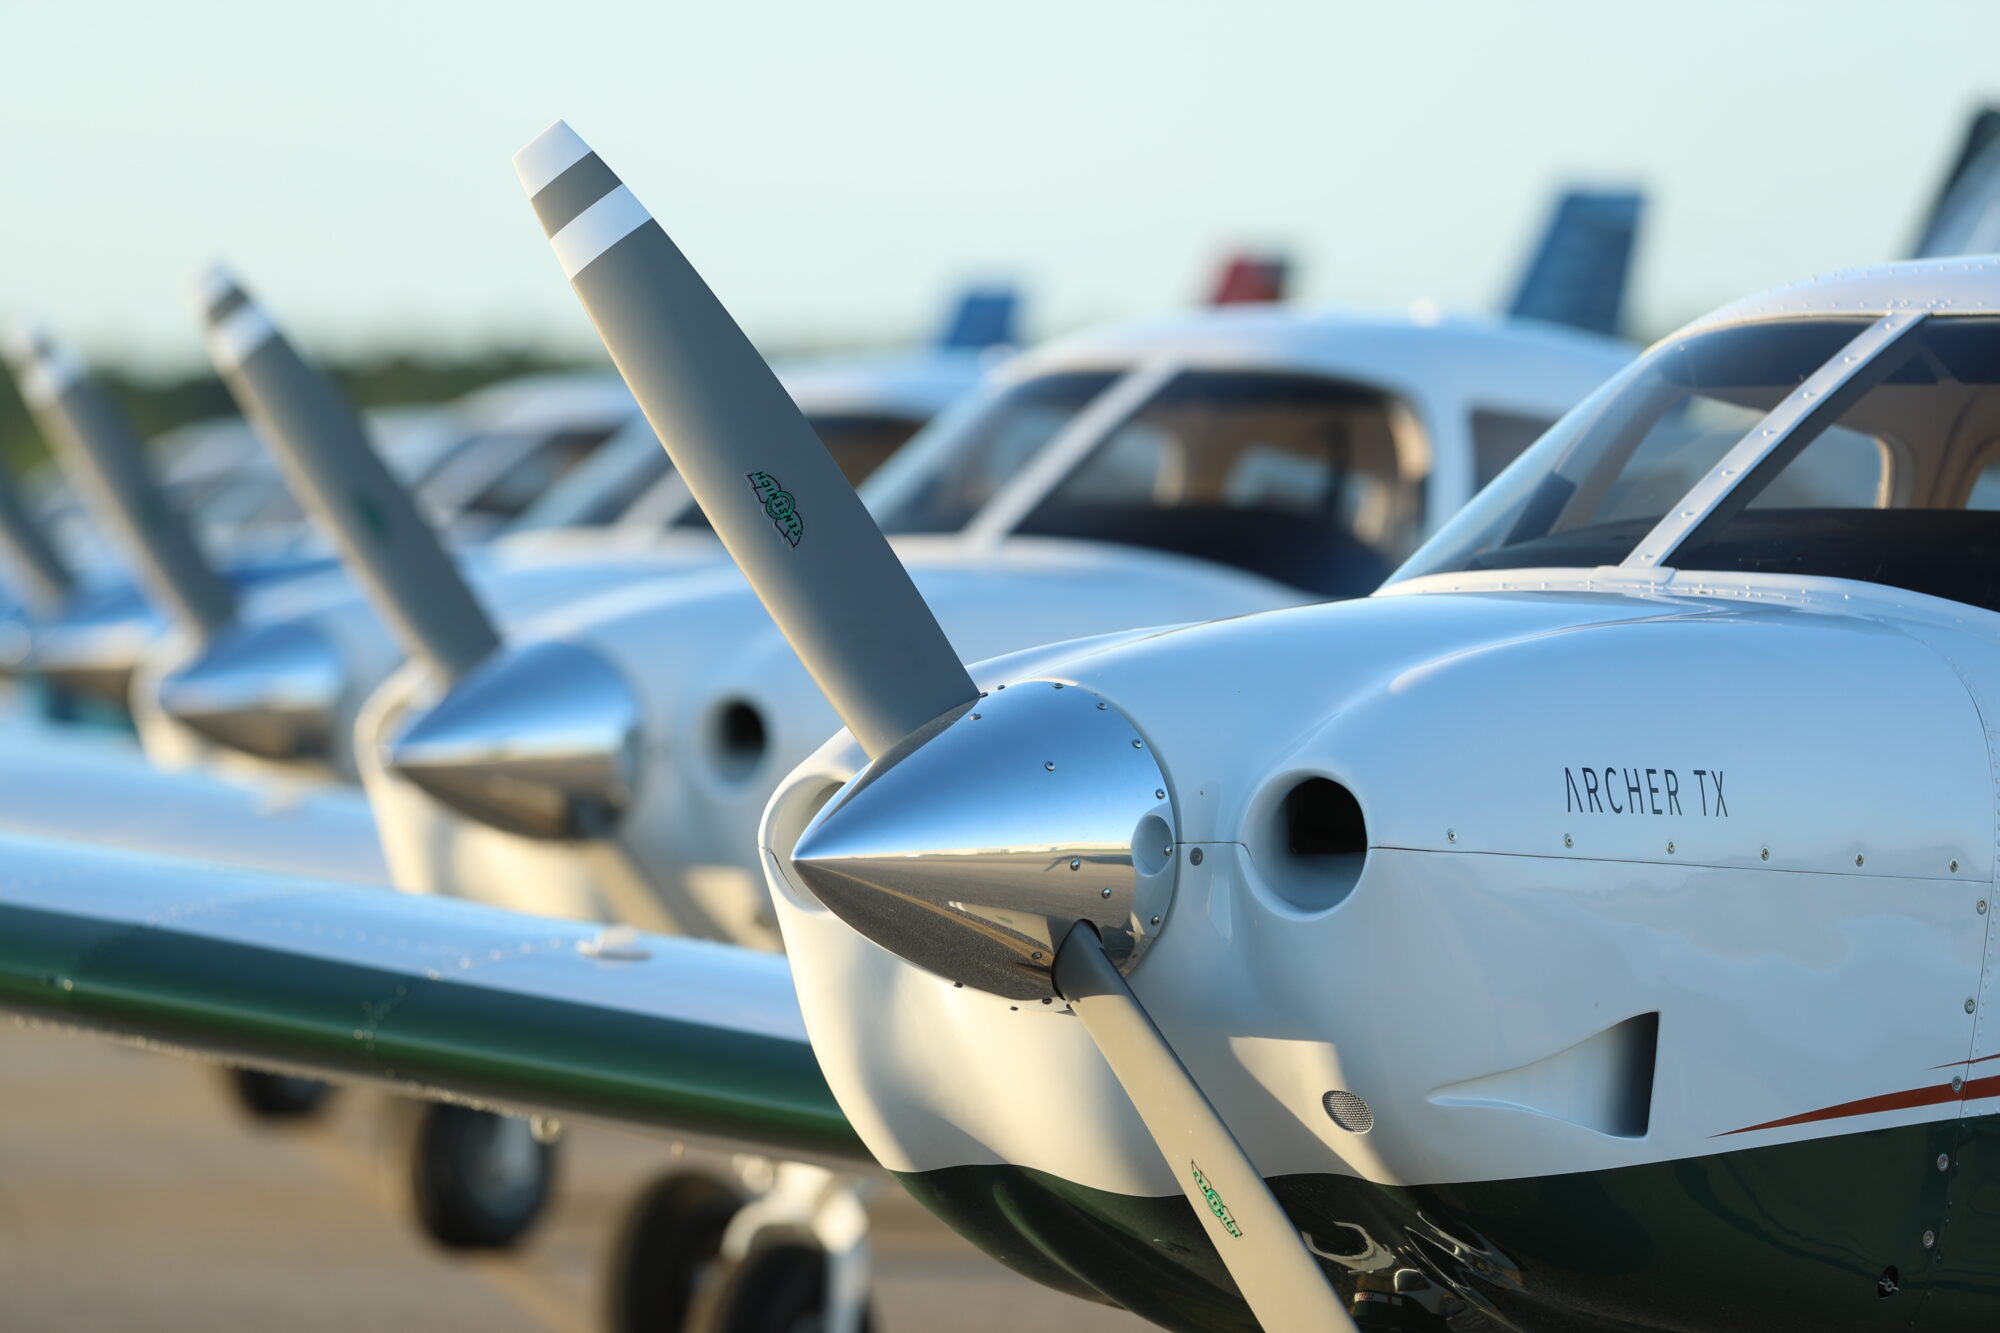 A fleet of Archer TX trainer aircraft at a flight school